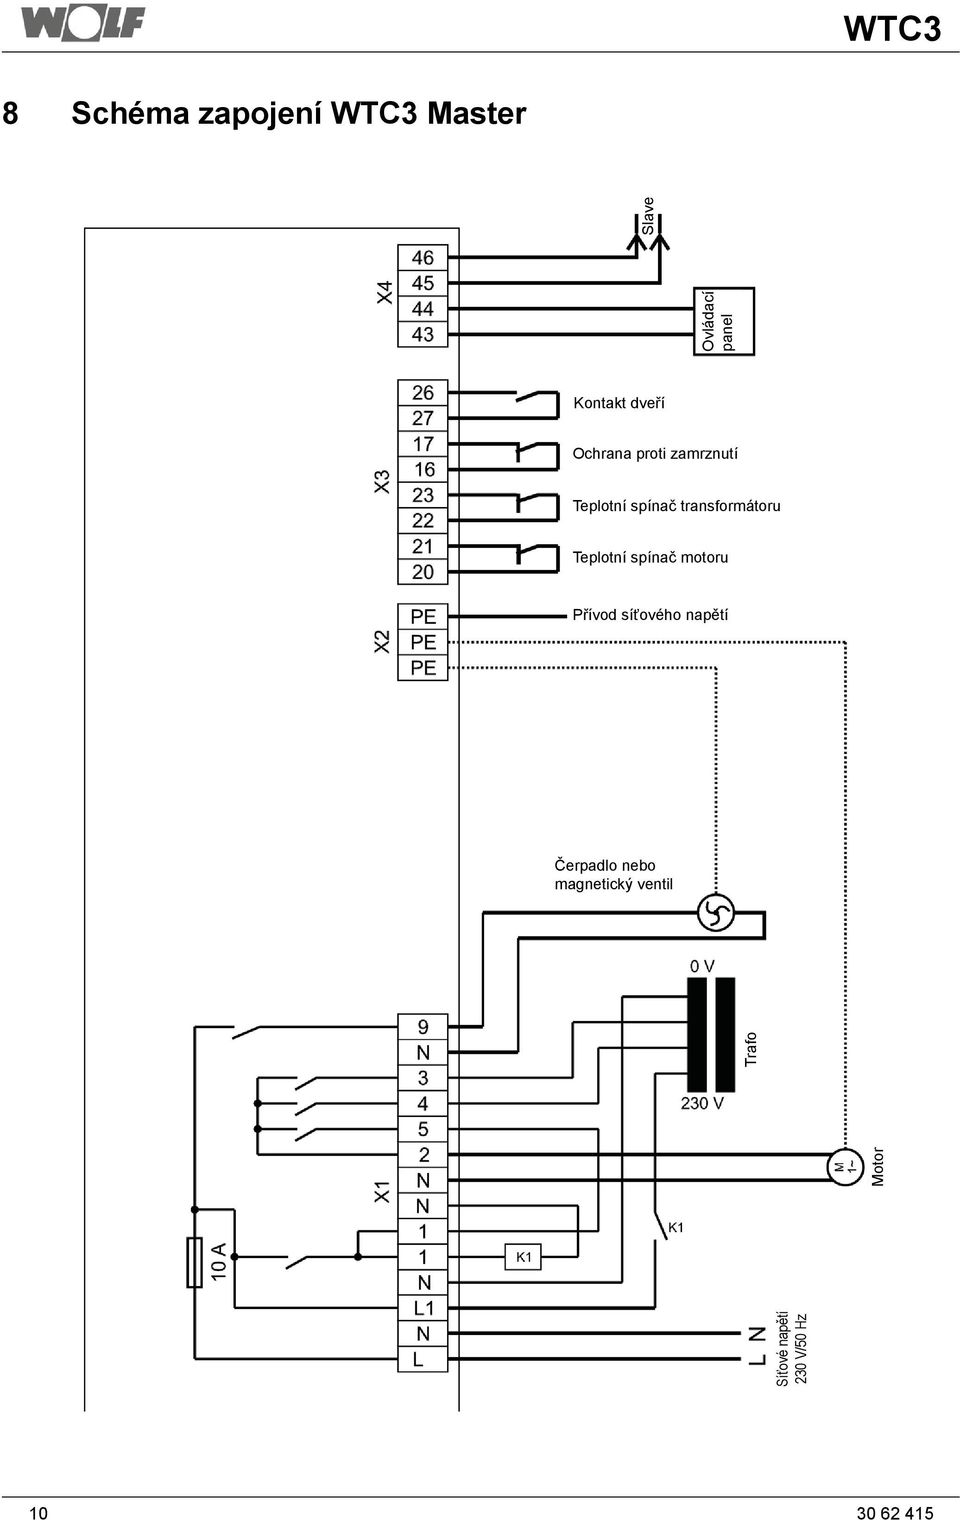 transformátoru Teplotní spínač motoru Přívod síťového